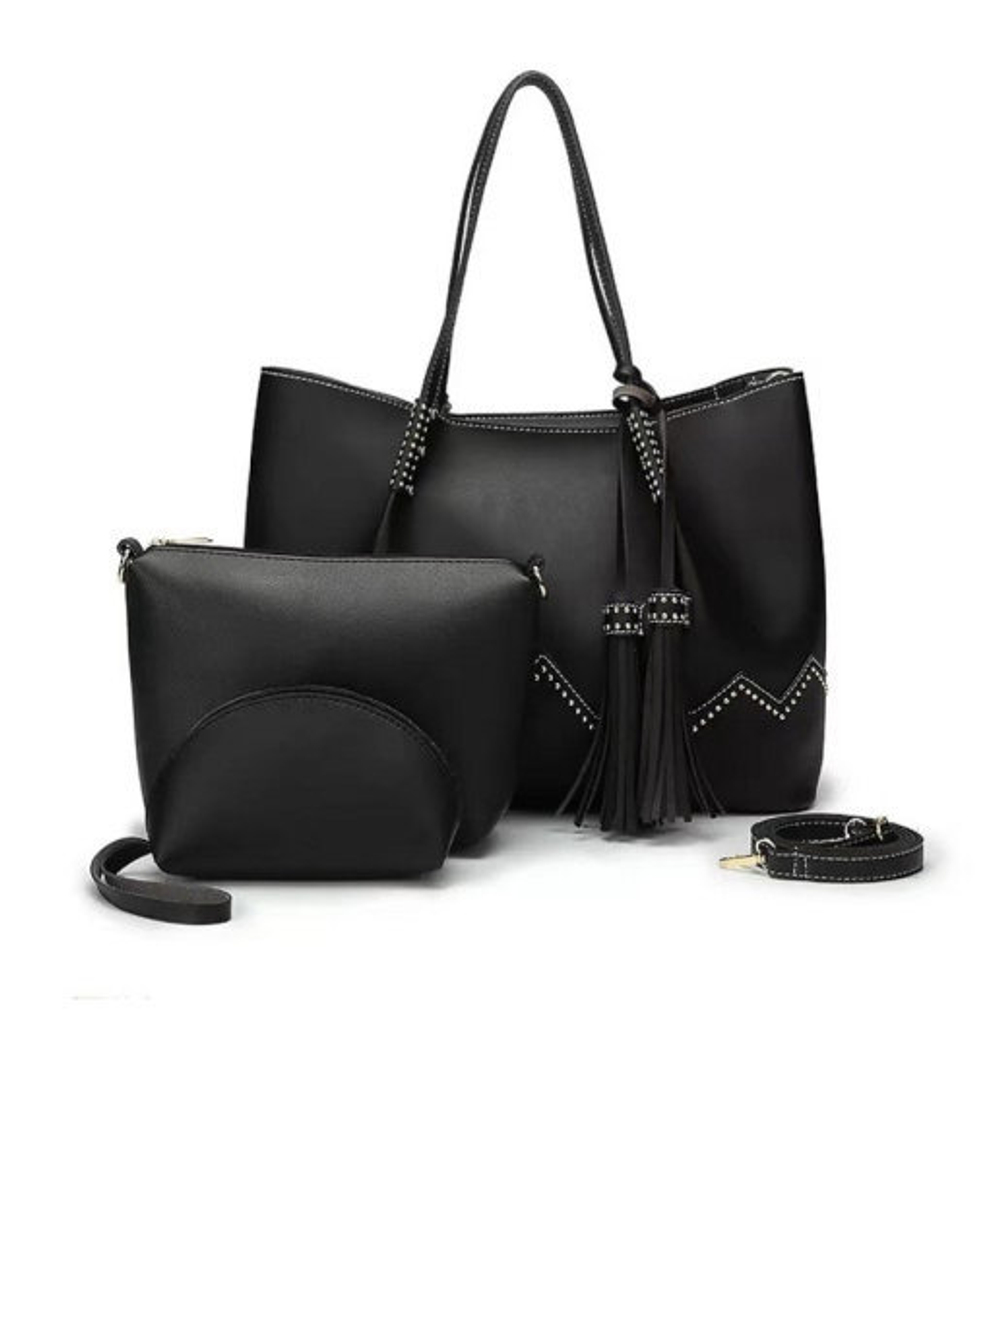 Чёрная женская сумка-матрёшка с двумя косметичками